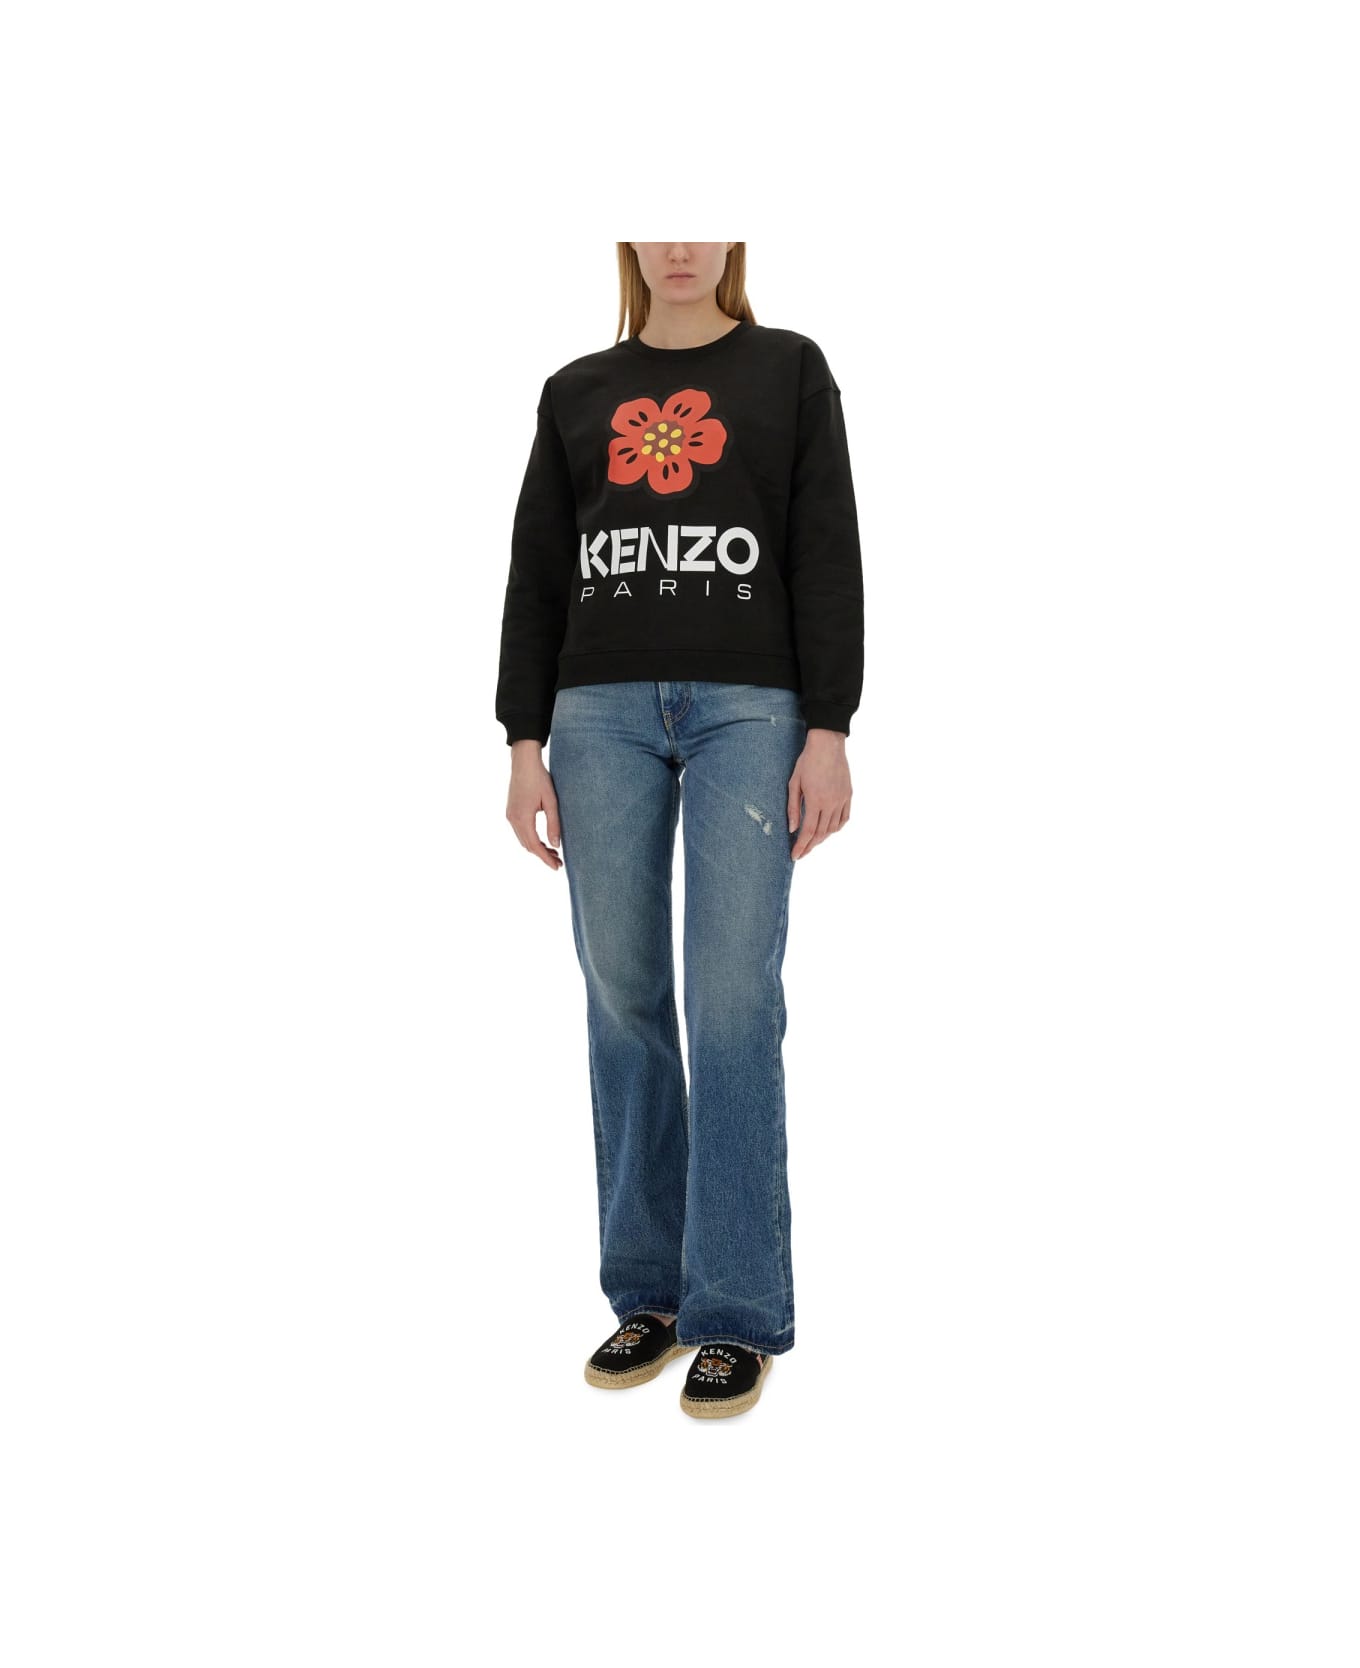 Kenzo Boke Flower Sweatshirt - BLACK